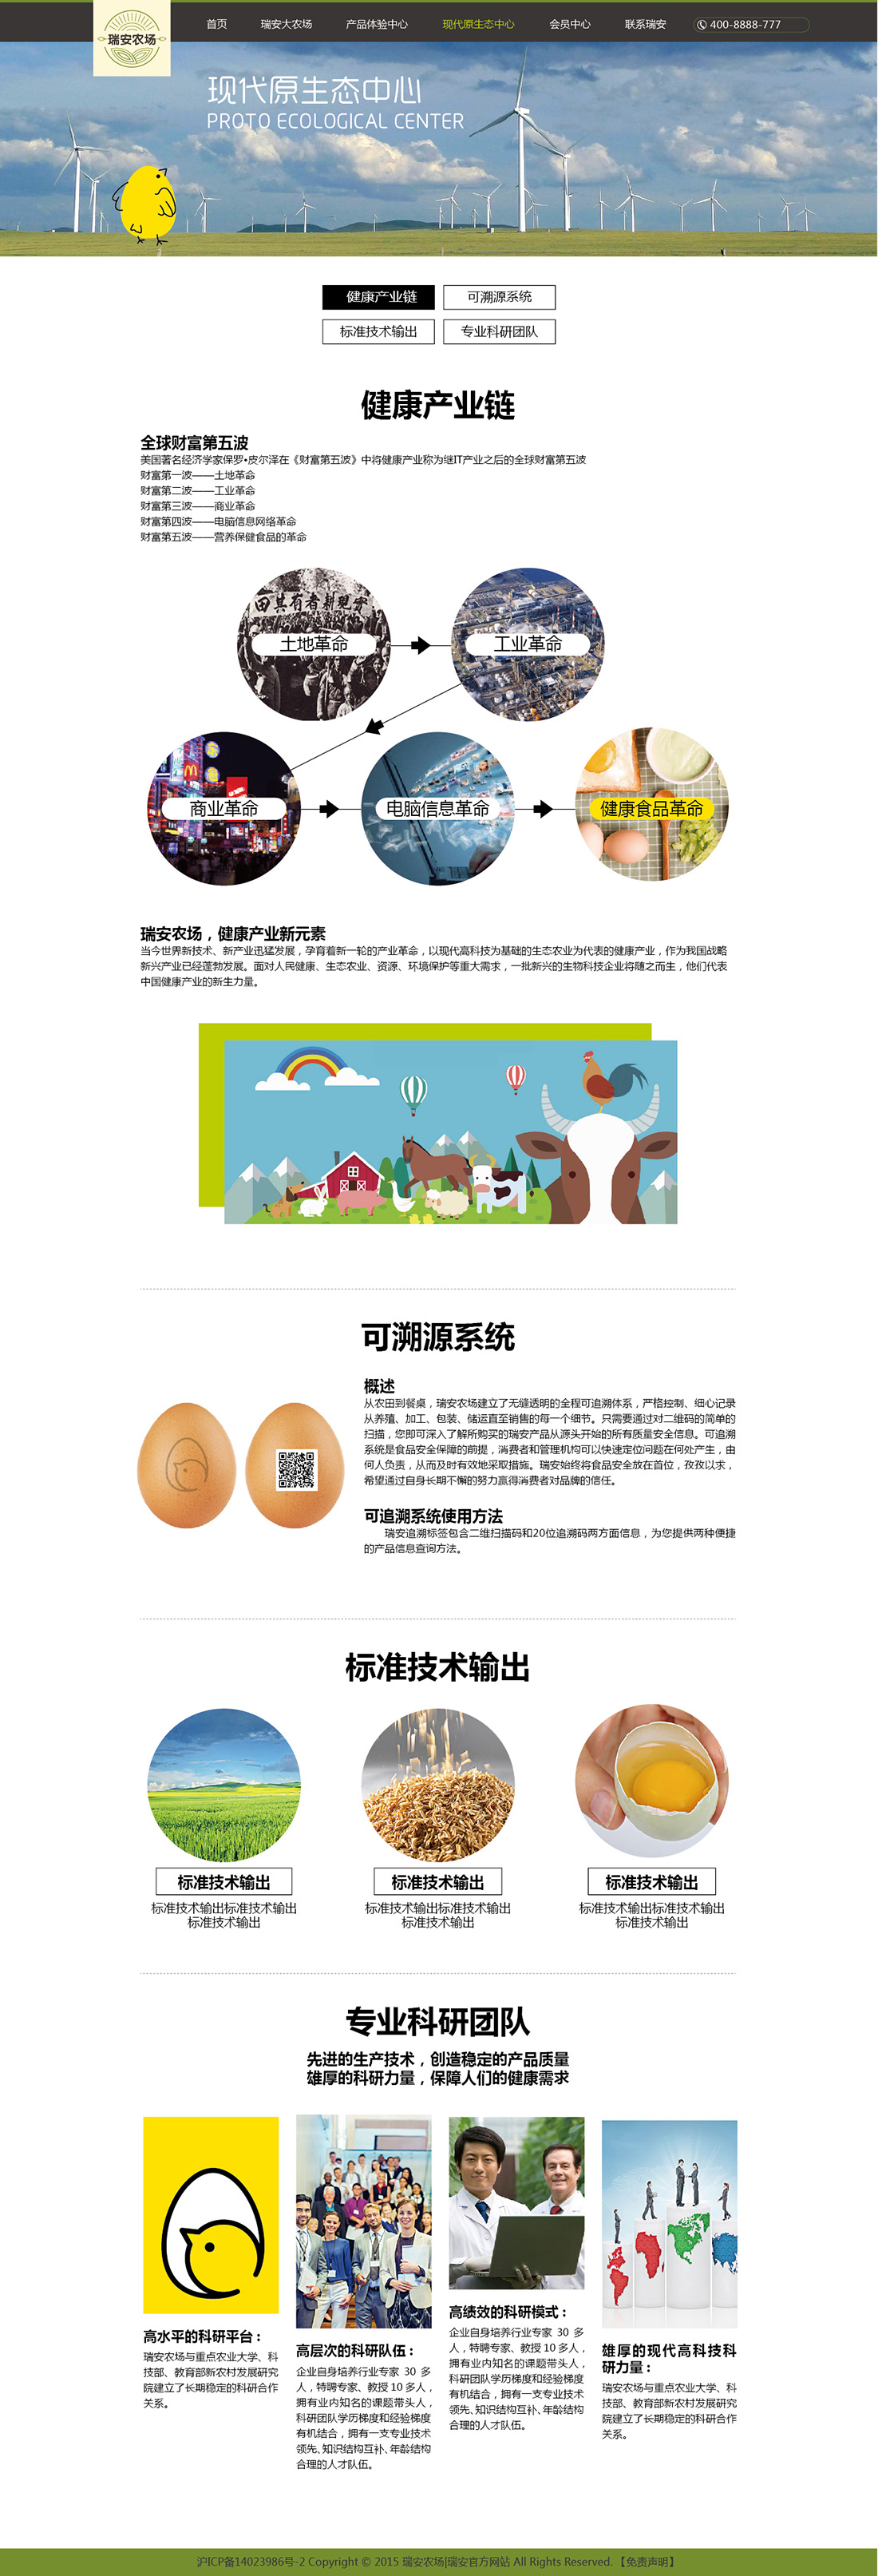 上海冠道策划出品-鸡智农产品全案策划